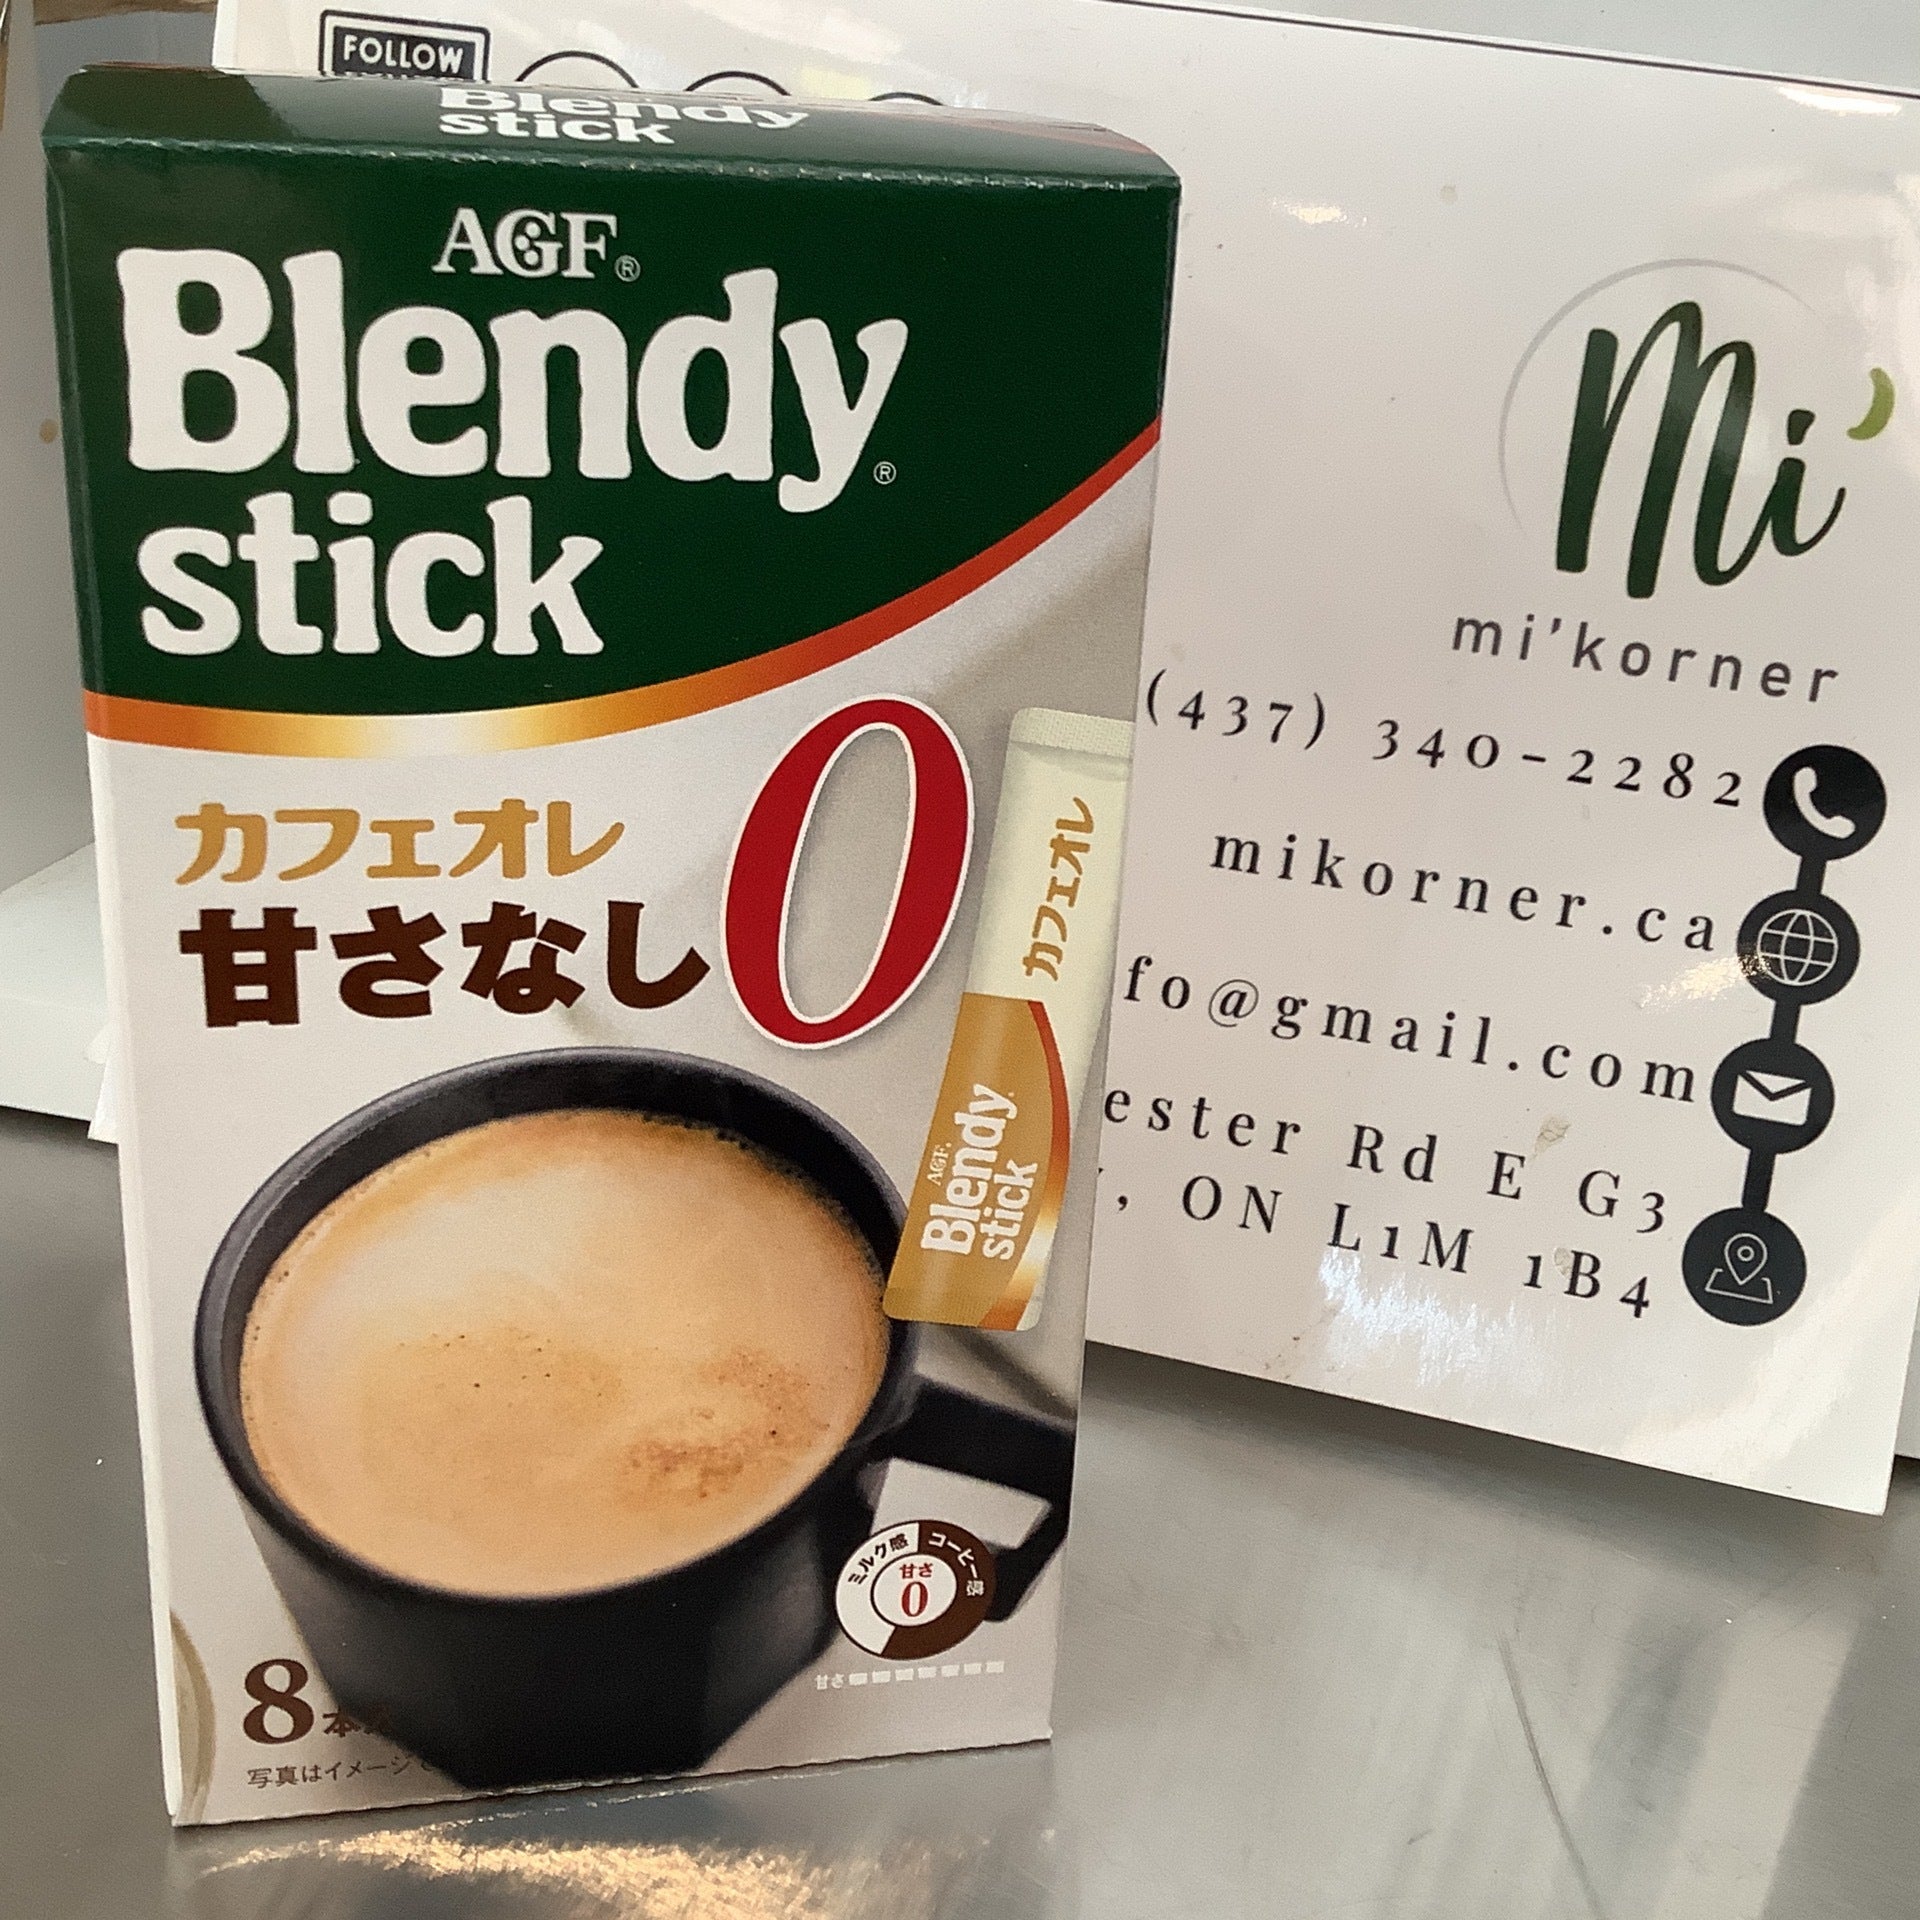 Blendy Stick Cafe Au Lait Calorie Half 1.6oz 2pcs Japanese Instant Cofee  AGF Ninjapo